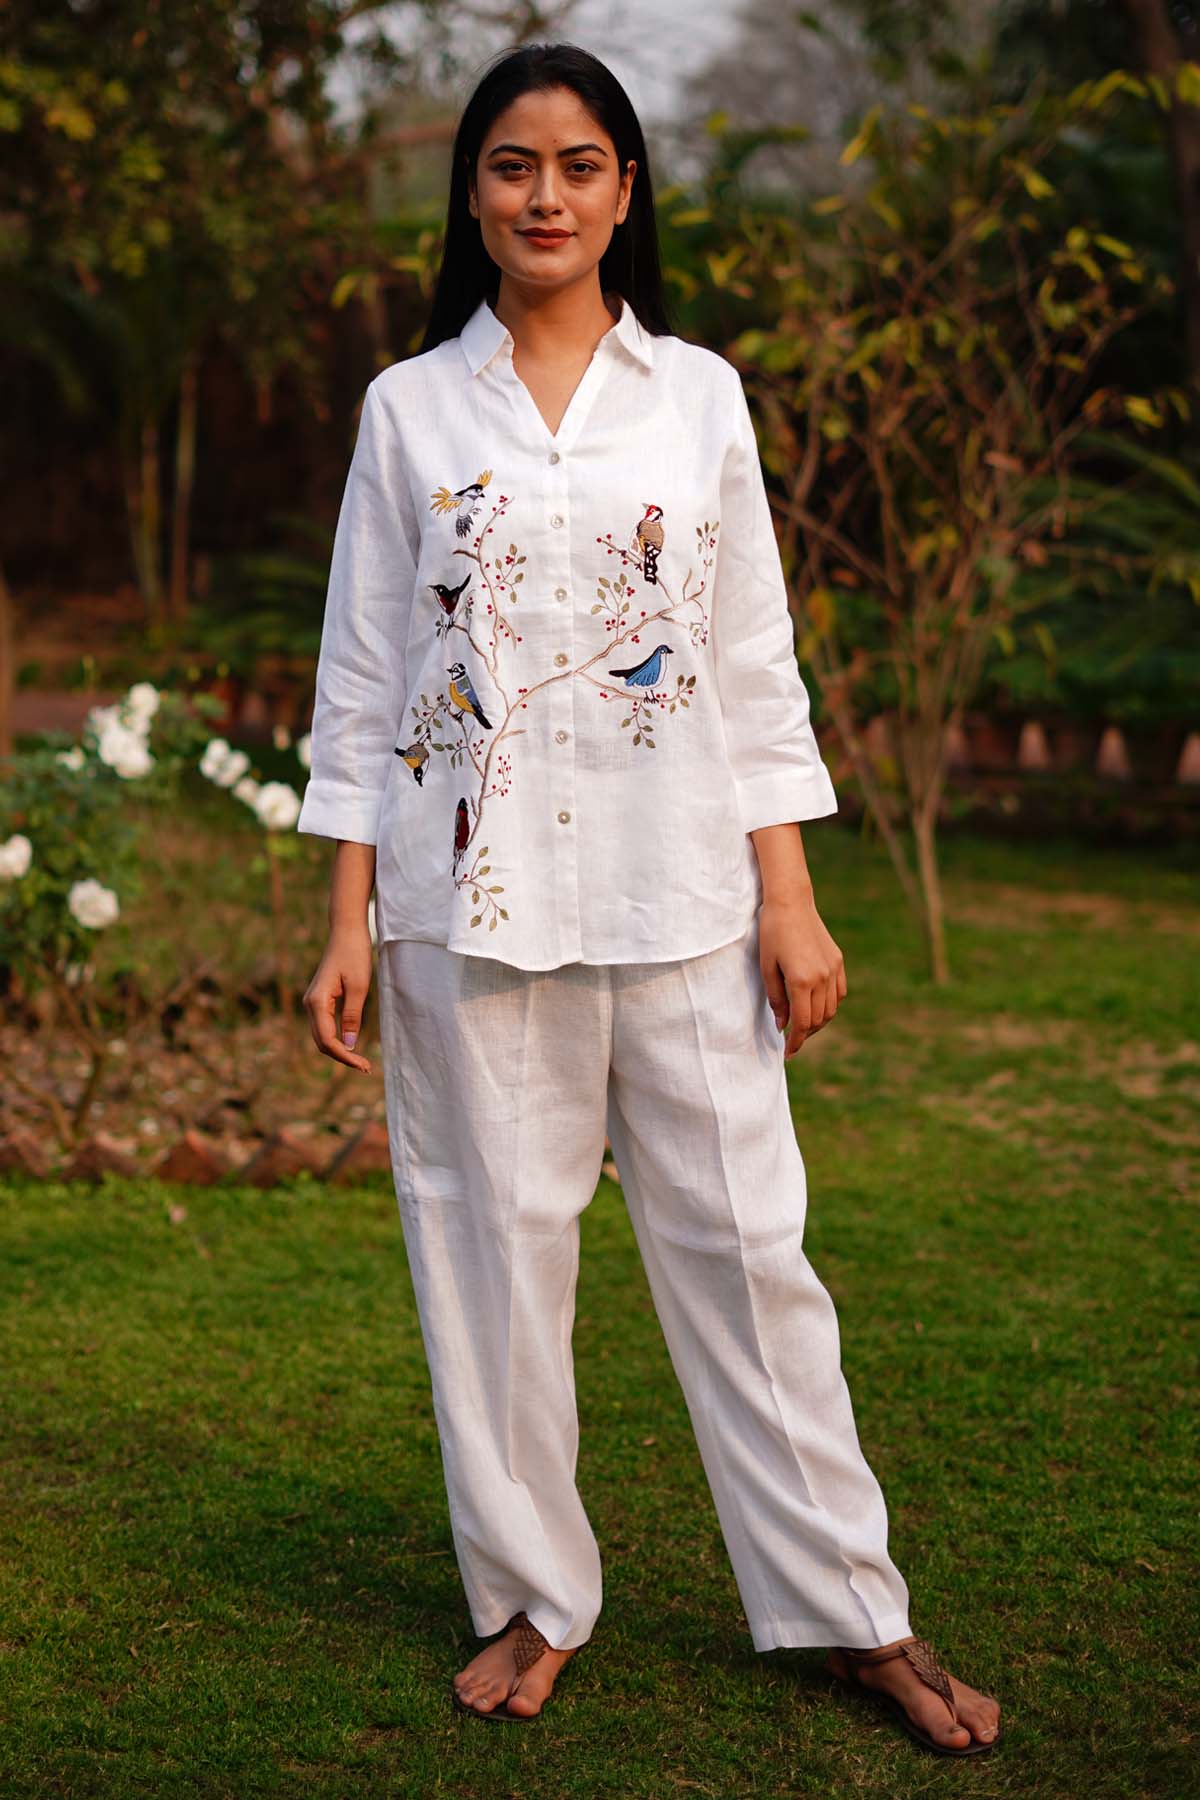 Designer Linen Bloom Timeless Canvas: White Linen Pants for Endless Style For Women Online at ScrollnShops